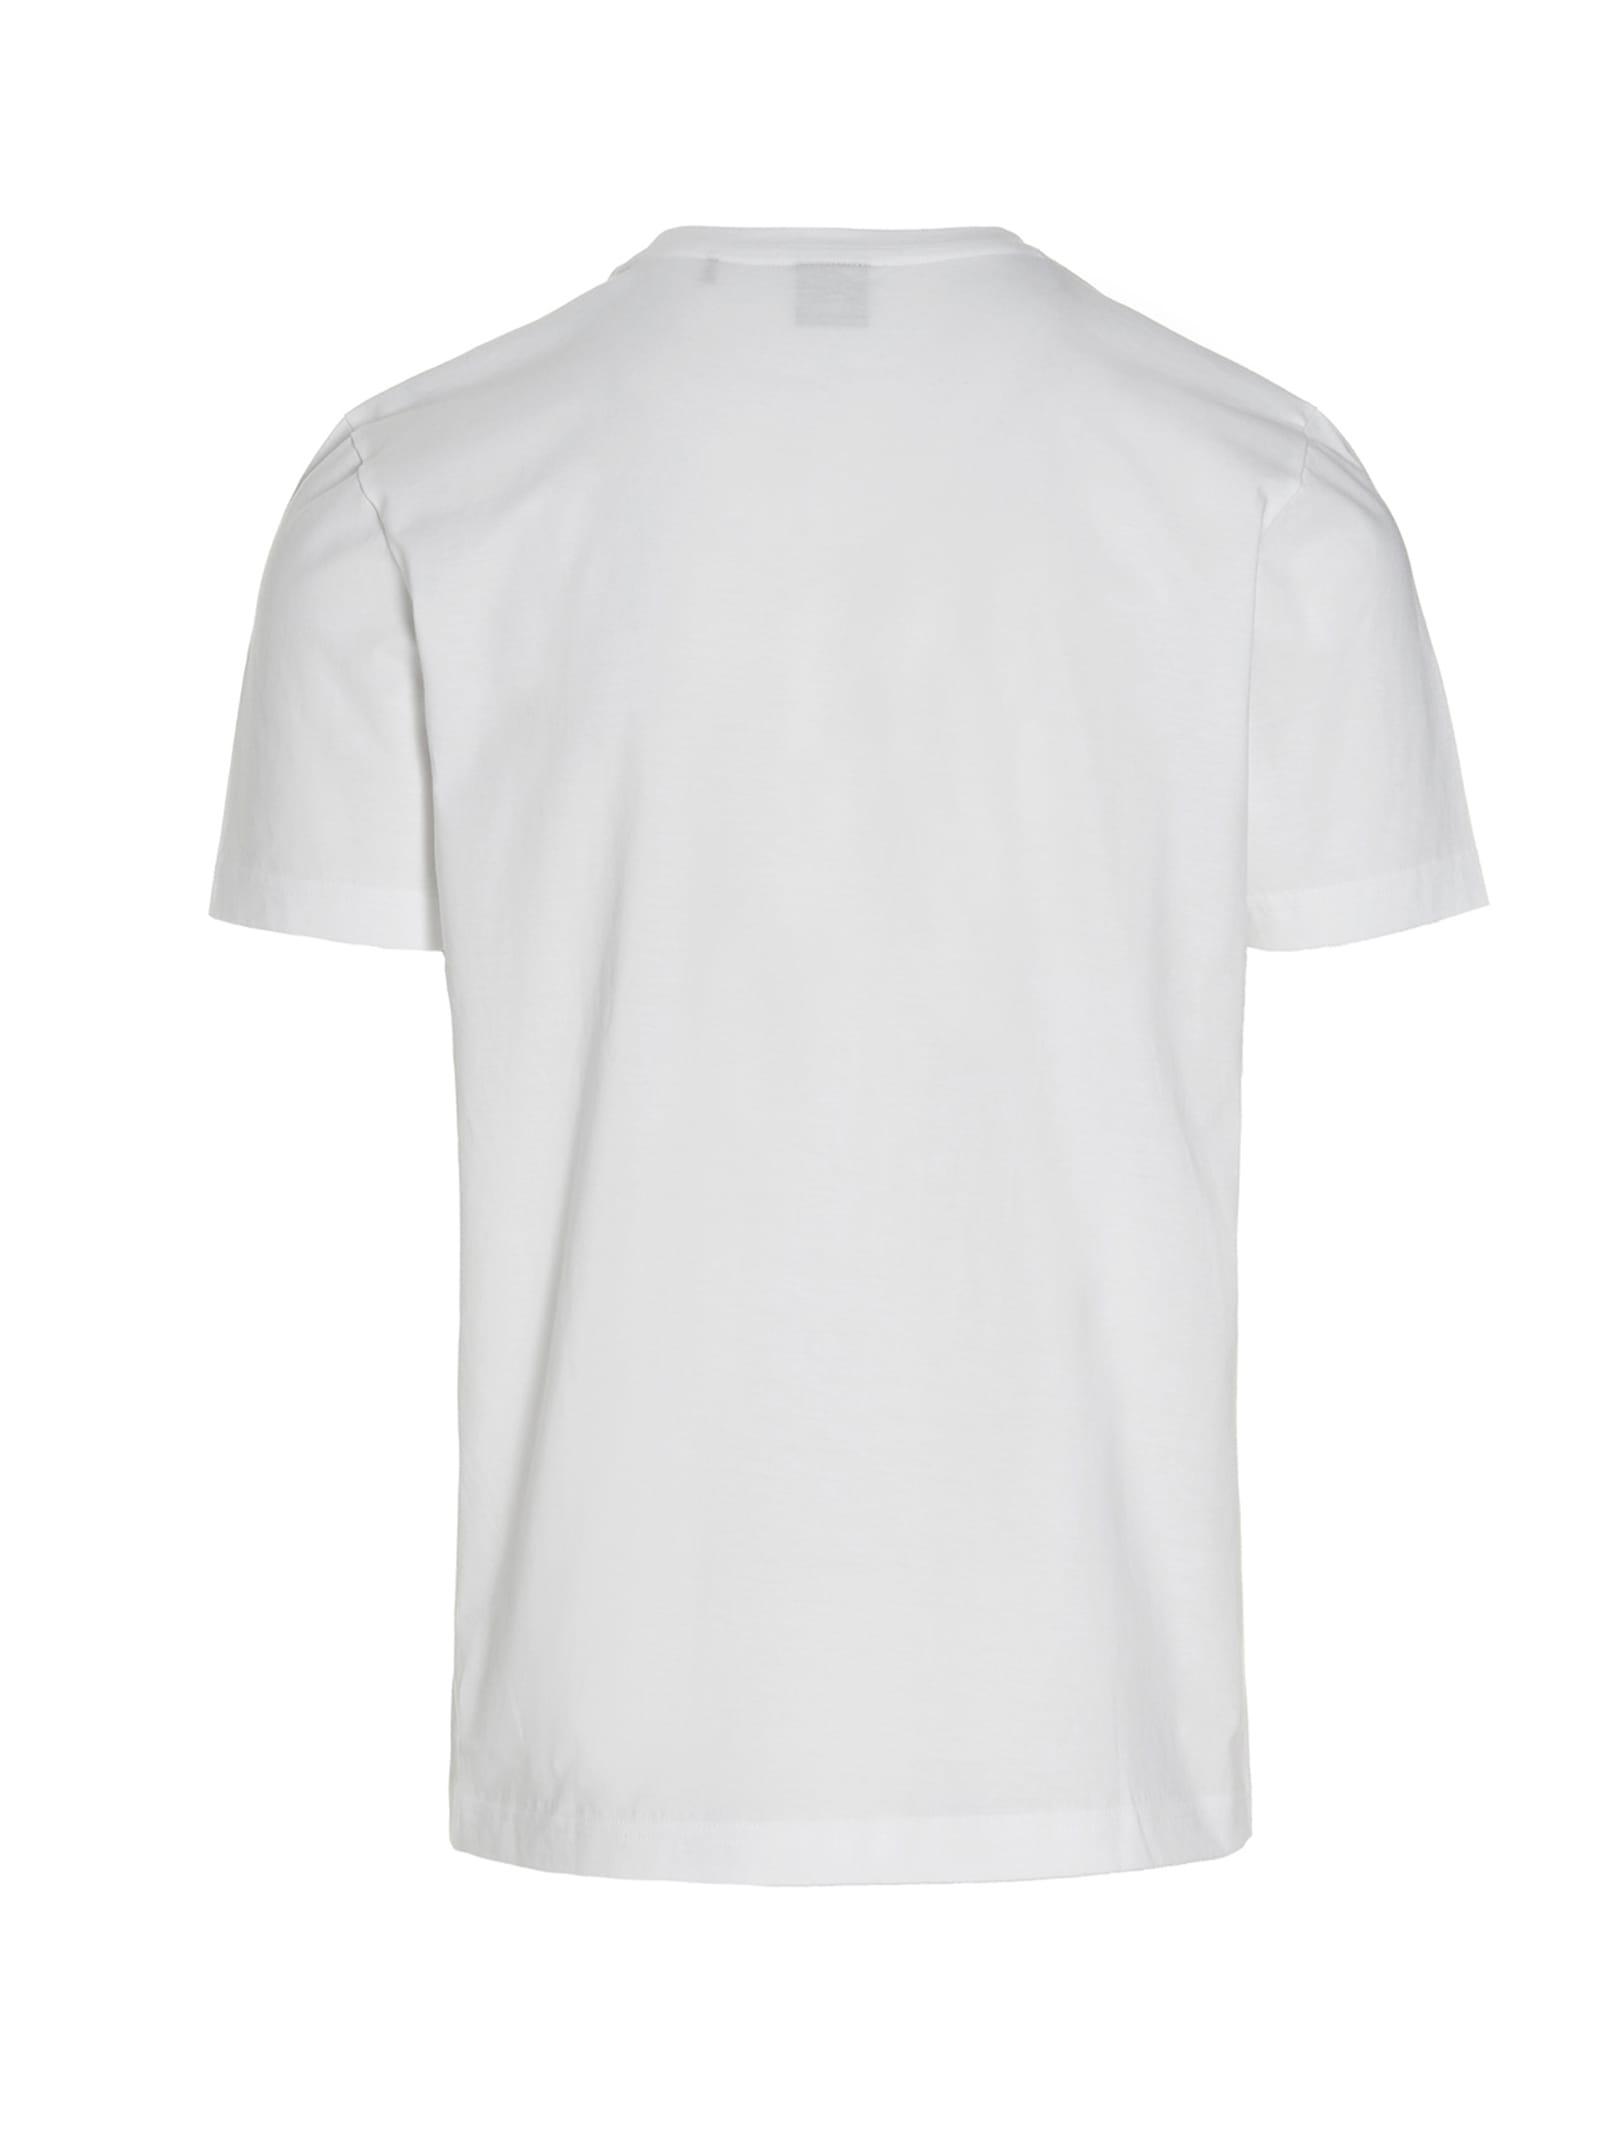 BOSS by HUGO BOSS Tee 6 T-shirt in White for Men | Lyst